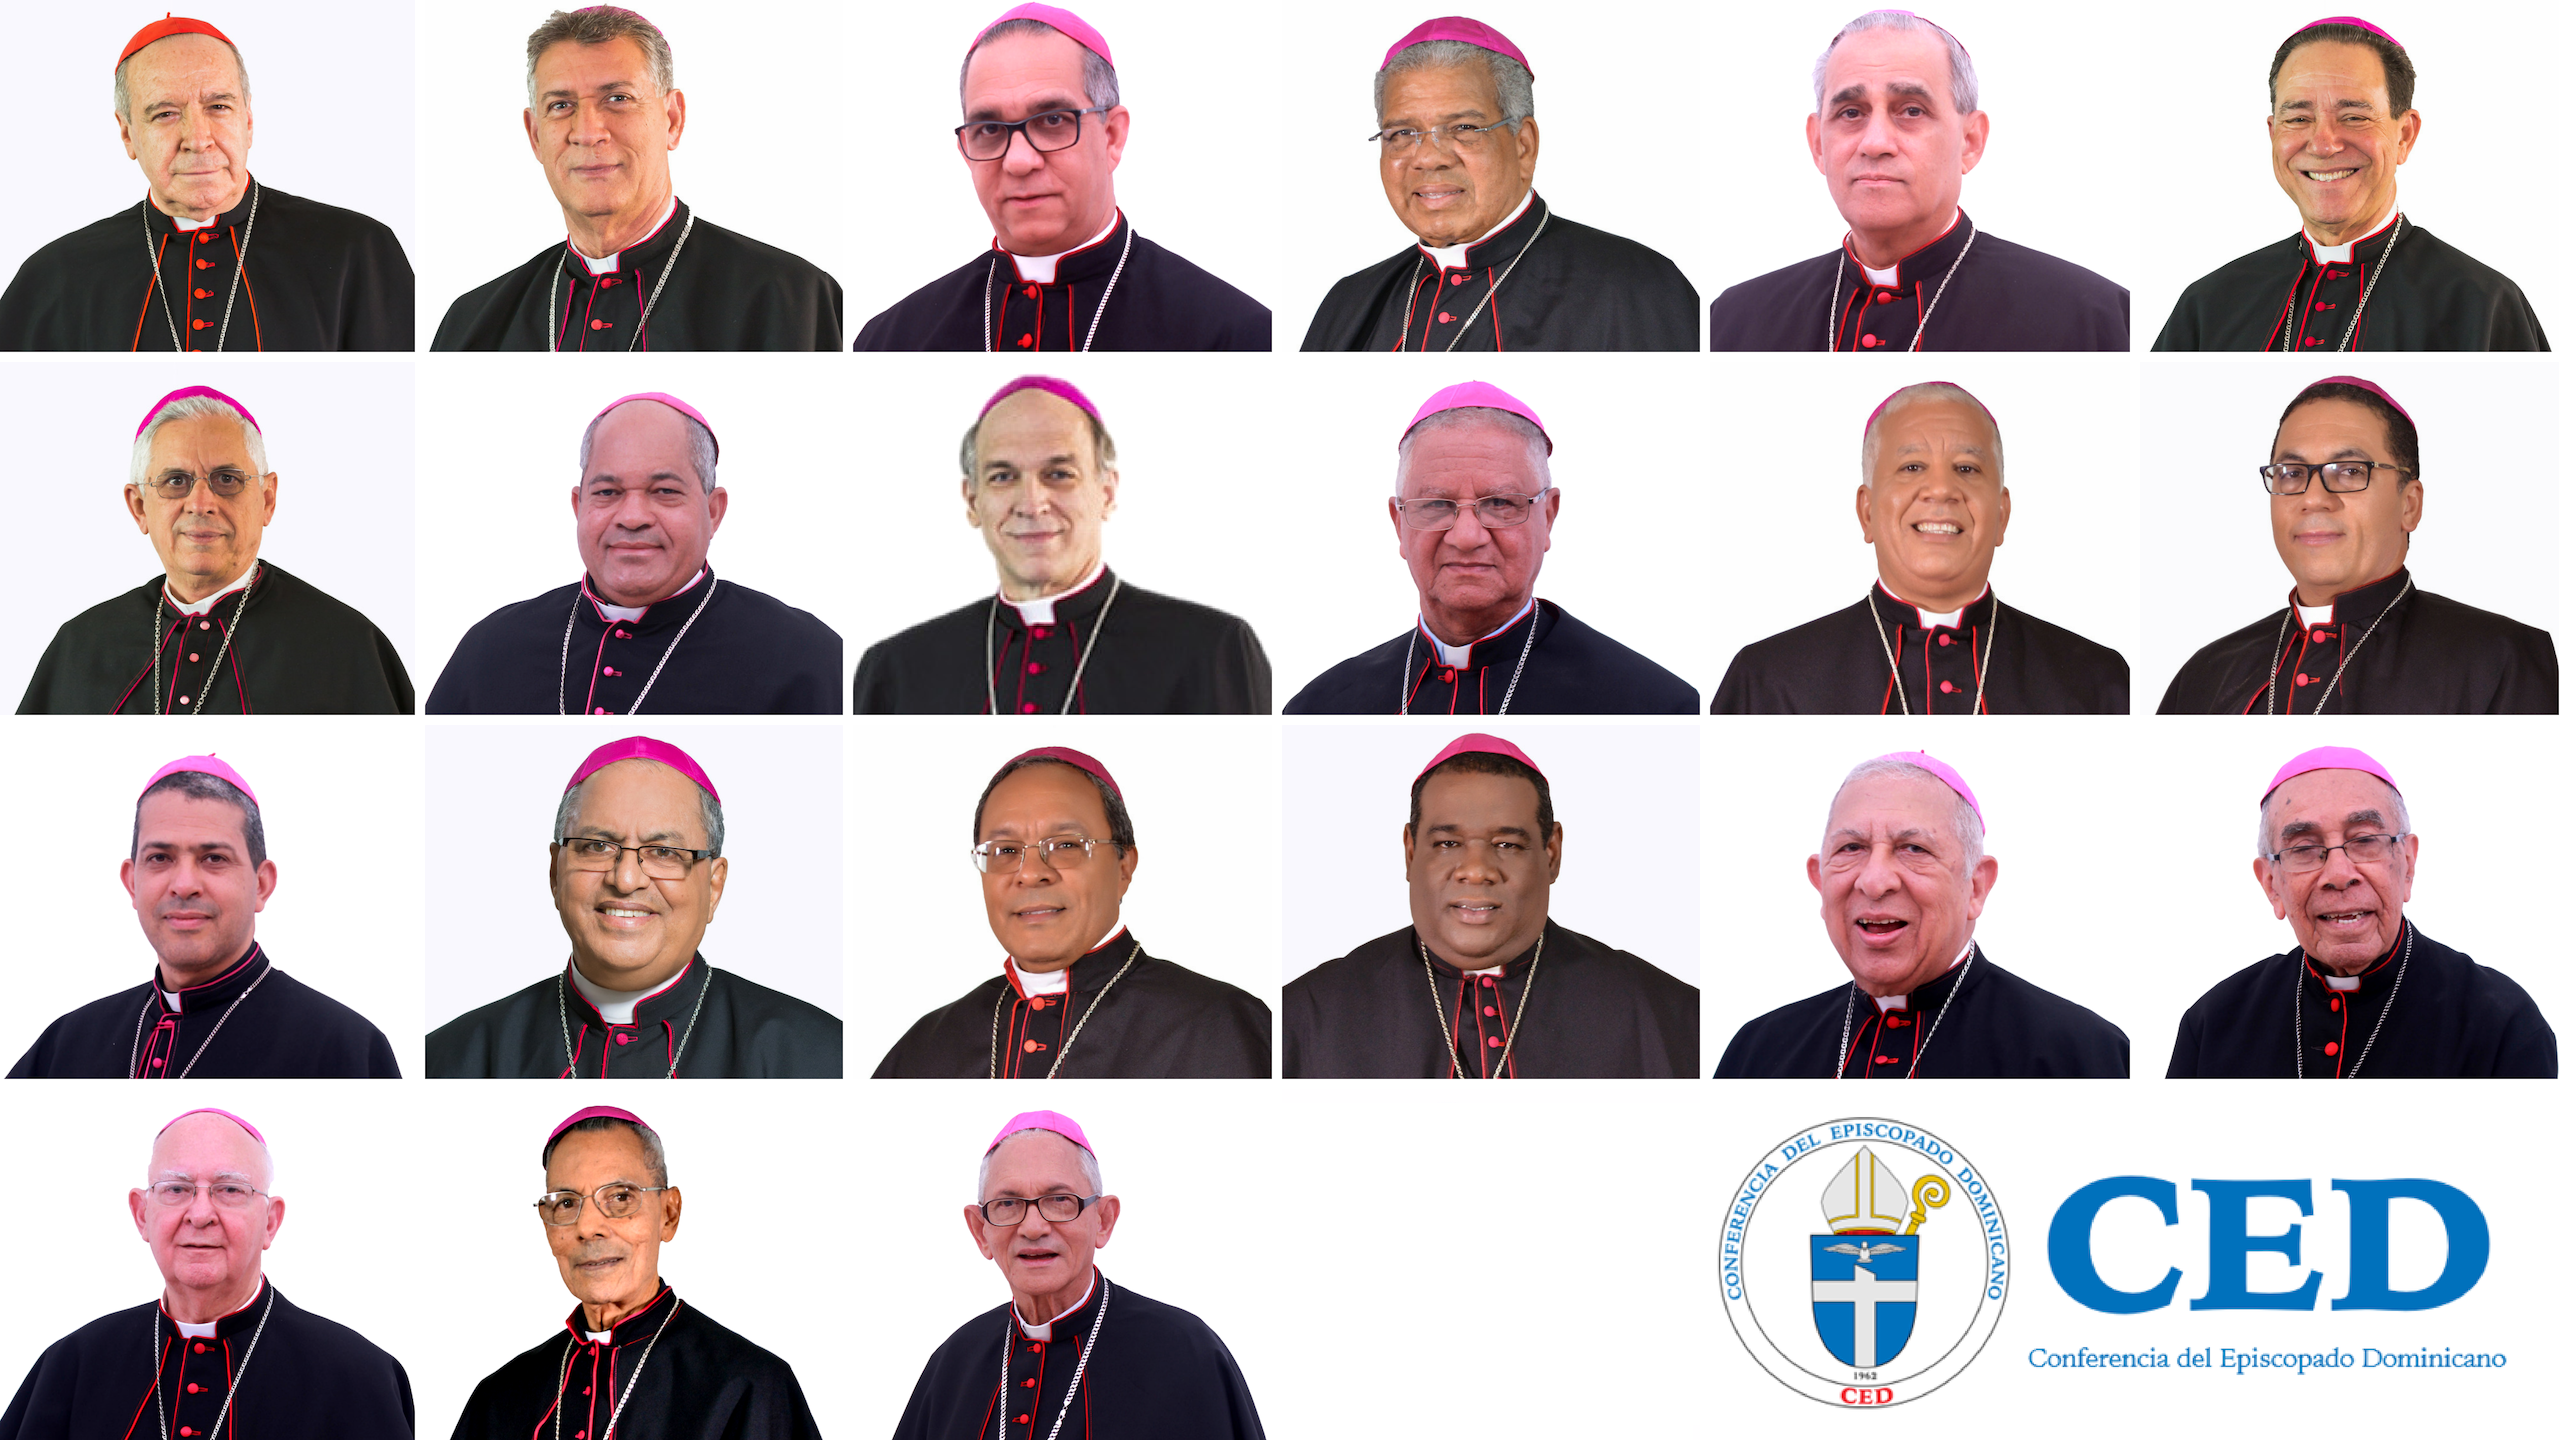 Obispos llaman a ser solidarios y combatir el mal a fuerza de bien